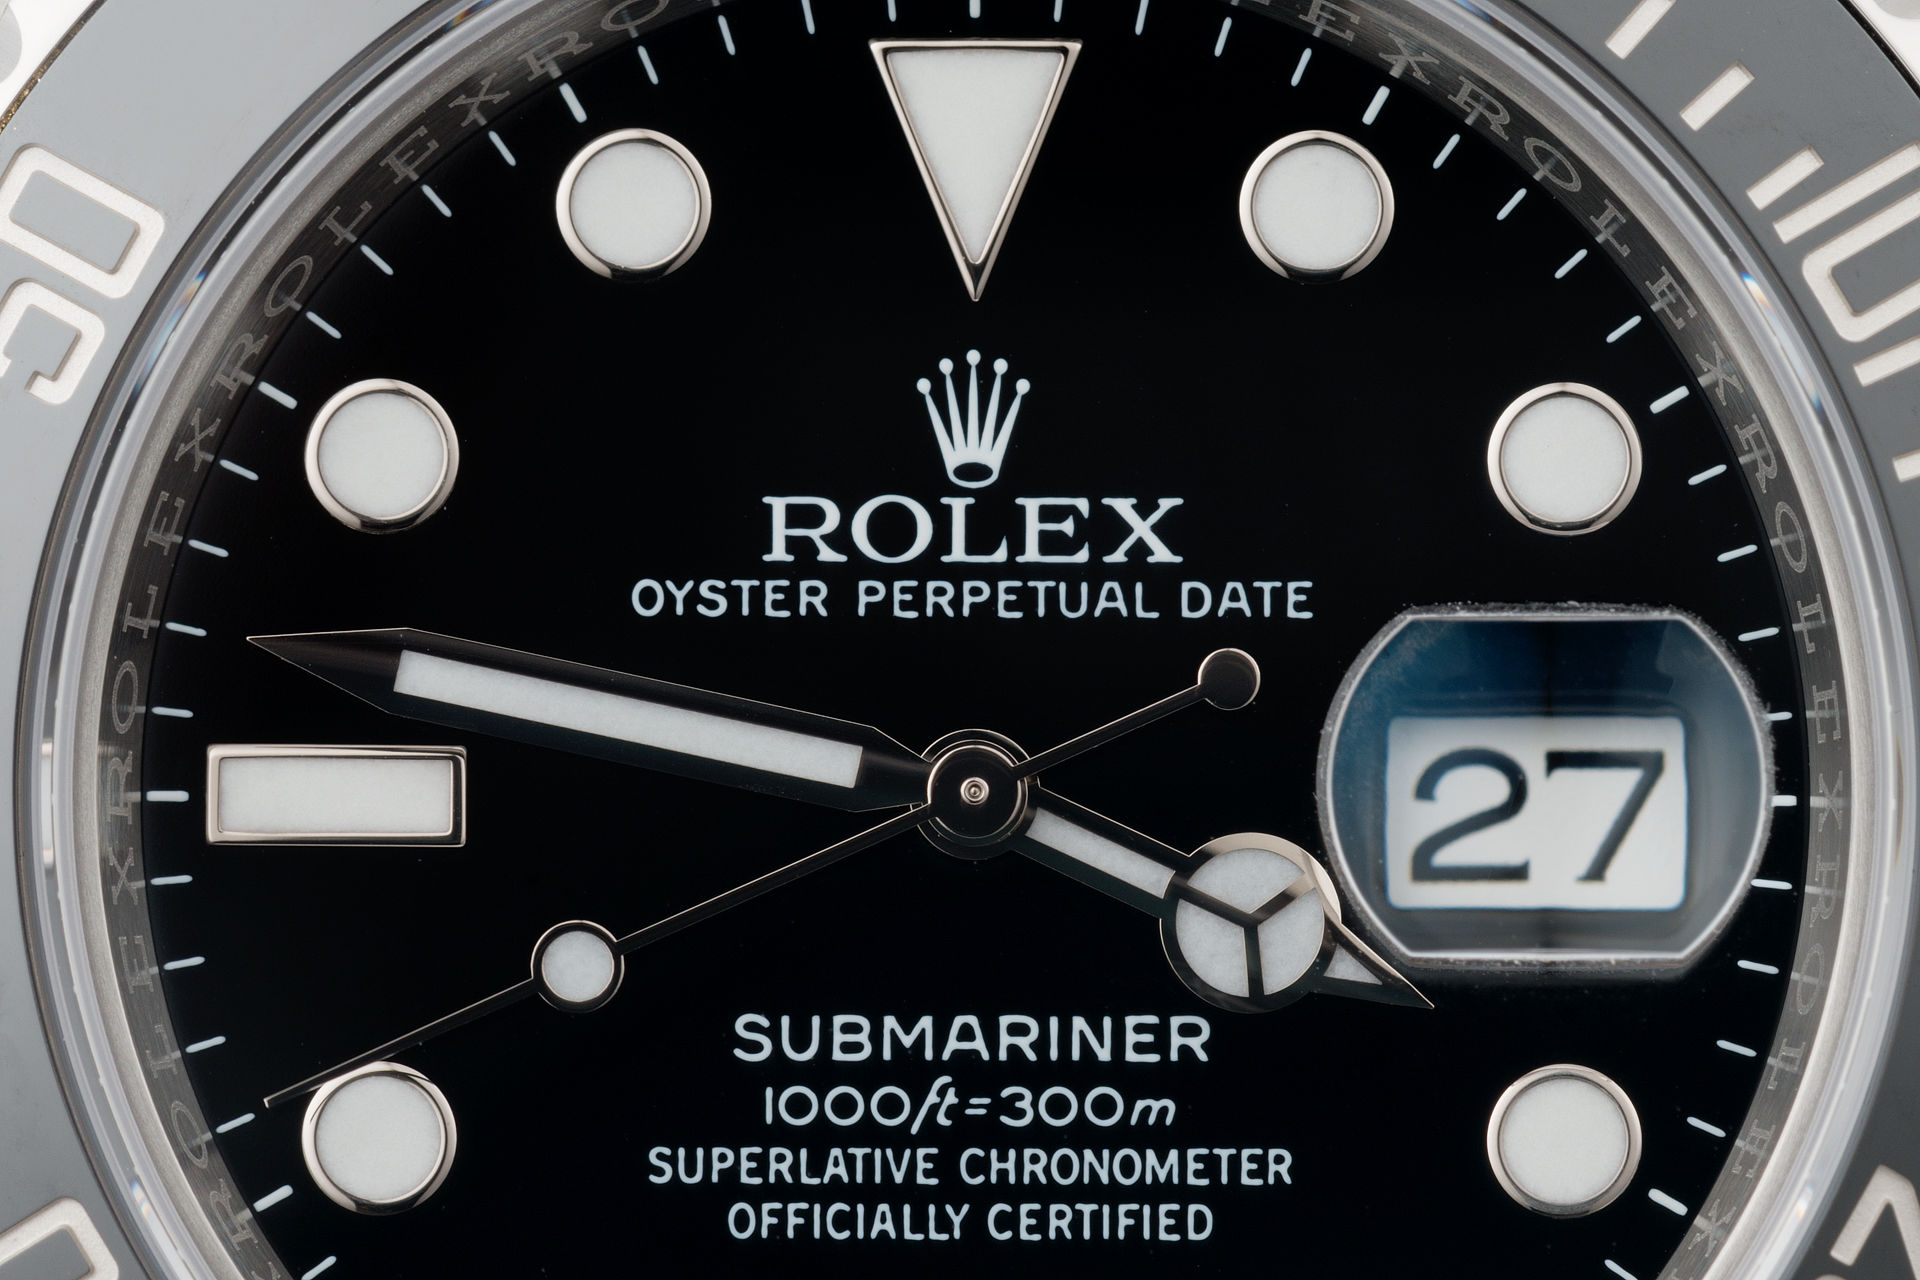 ref 116610LN | Brand New 5 Year Rolex Warranty | Rolex Submariner Date